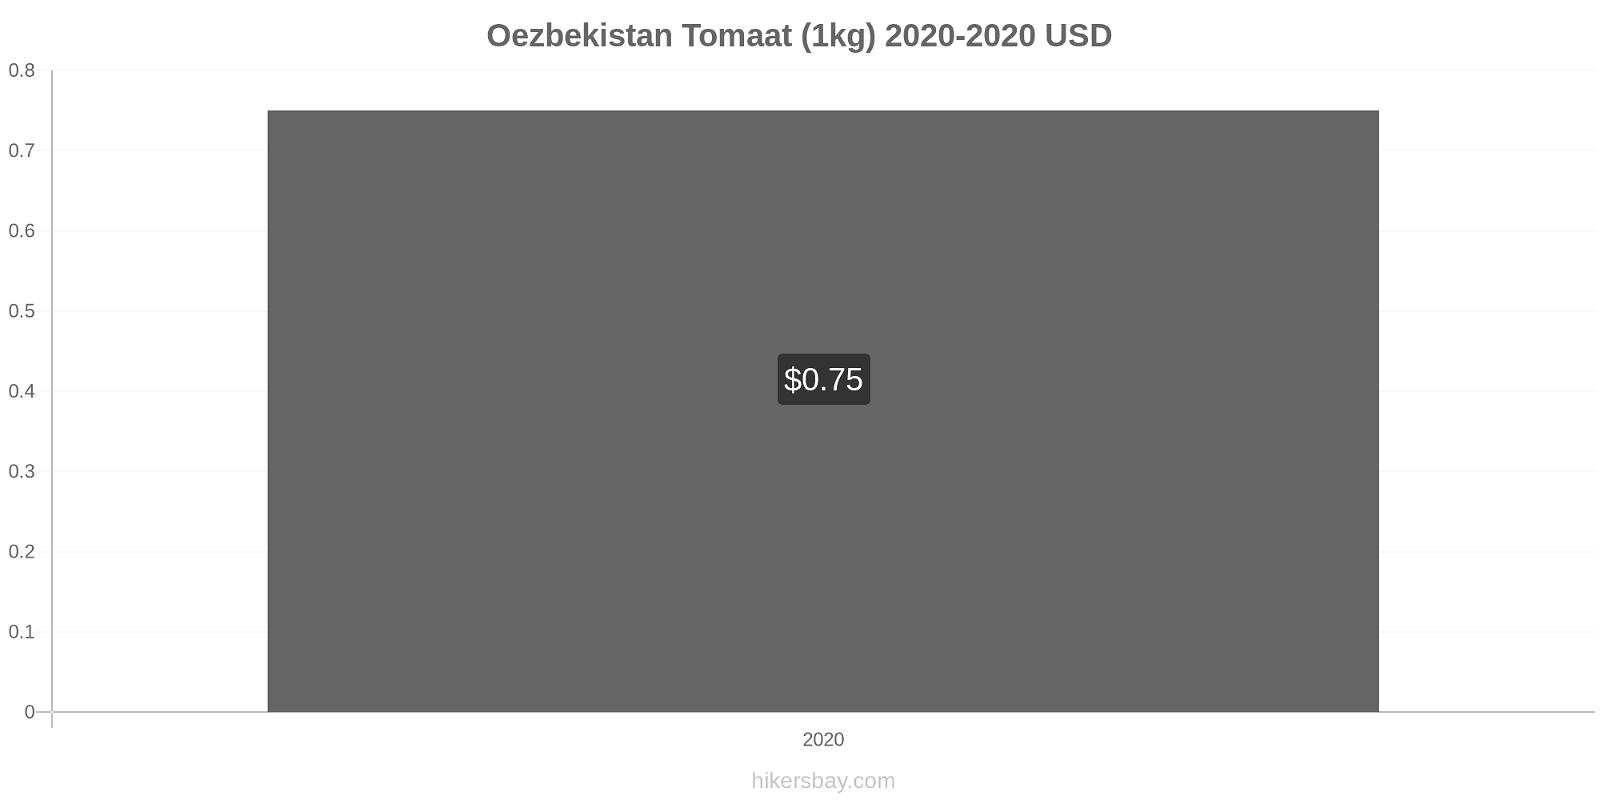 Oezbekistan prijswijzigingen Tomaat (1kg) hikersbay.com